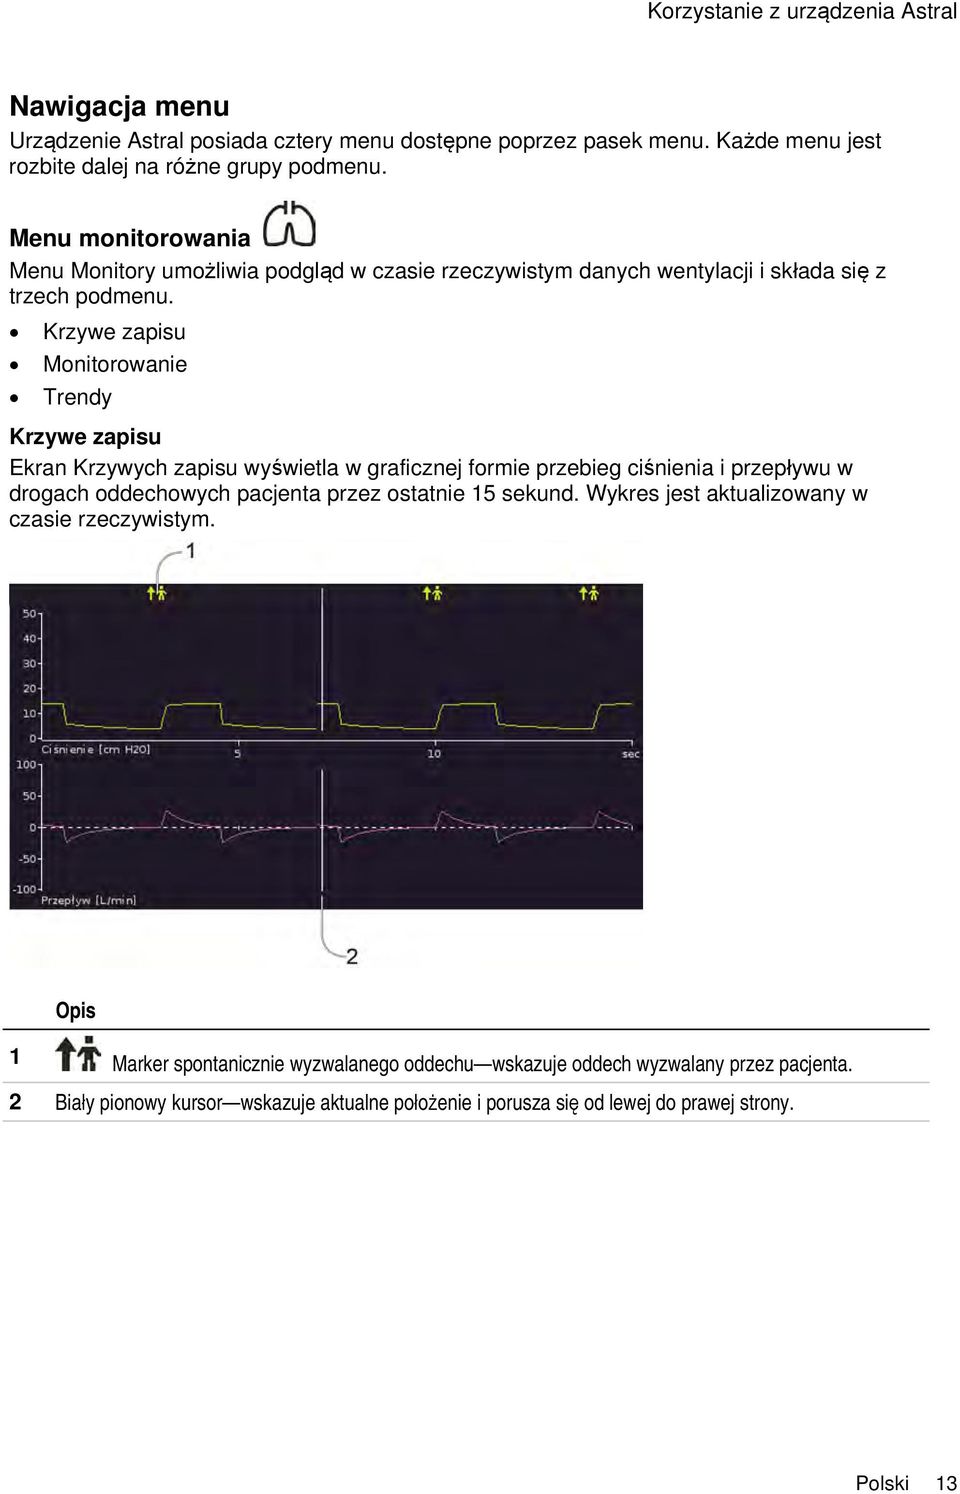 Krzywe zapisu Monitorowanie Trendy Krzywe zapisu Ekran Krzywych zapisu wyświetla w graficznej formie przebieg ciśnienia i przepływu w drogach oddechowych pacjenta przez ostatnie